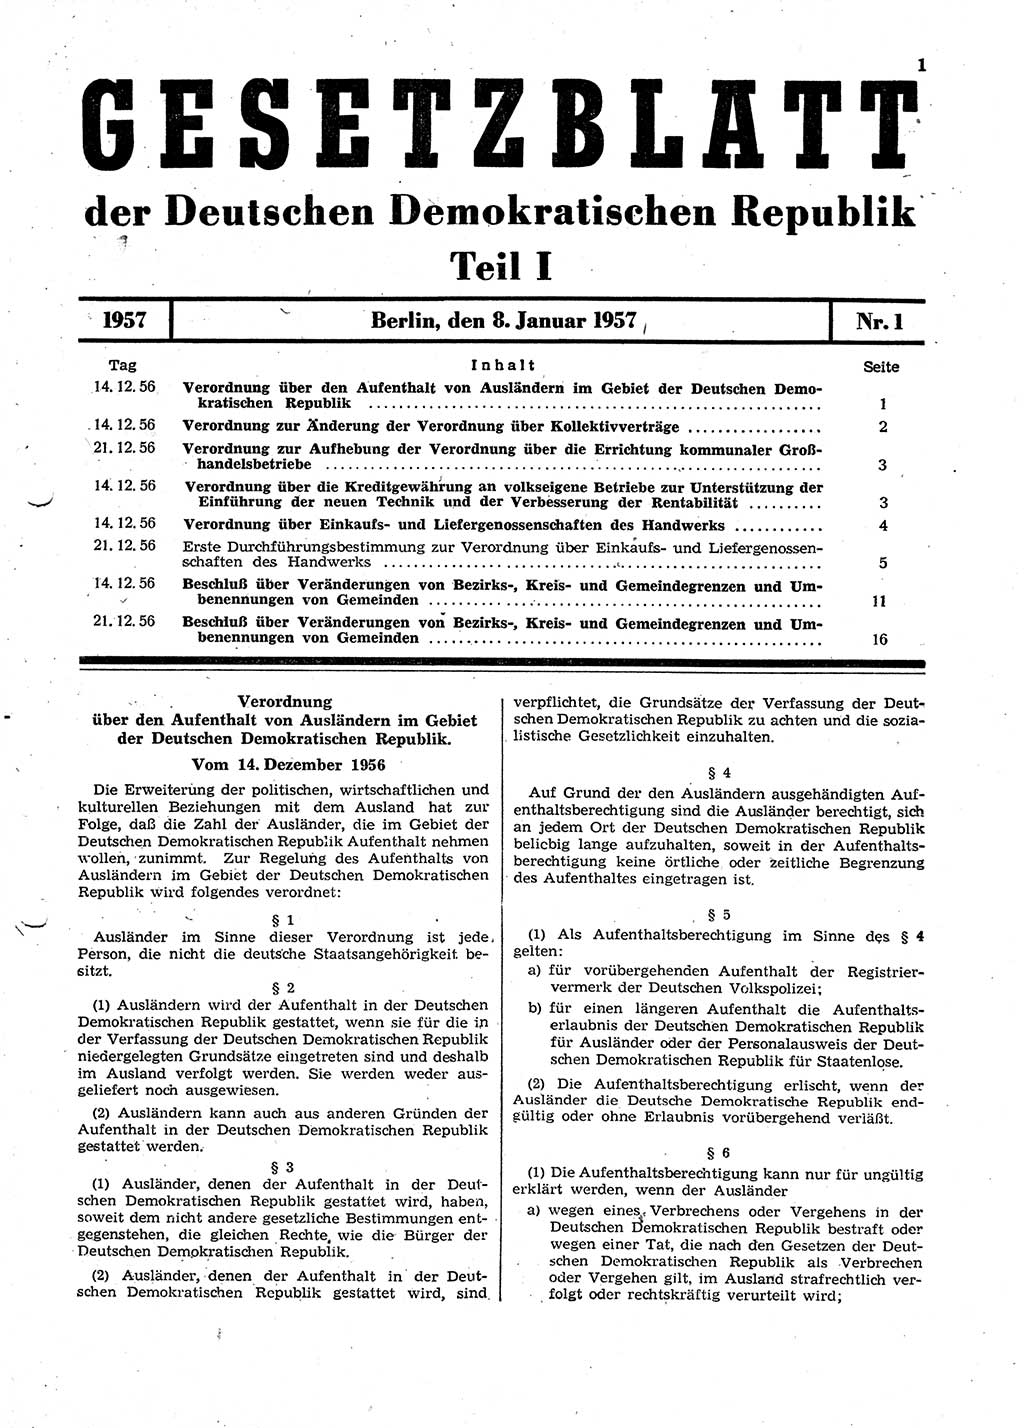 Gesetzblatt (GBl.) der Deutschen Demokratischen Republik (DDR) Teil Ⅰ 1957, Seite 1 (GBl. DDR Ⅰ 1957, S. 1)